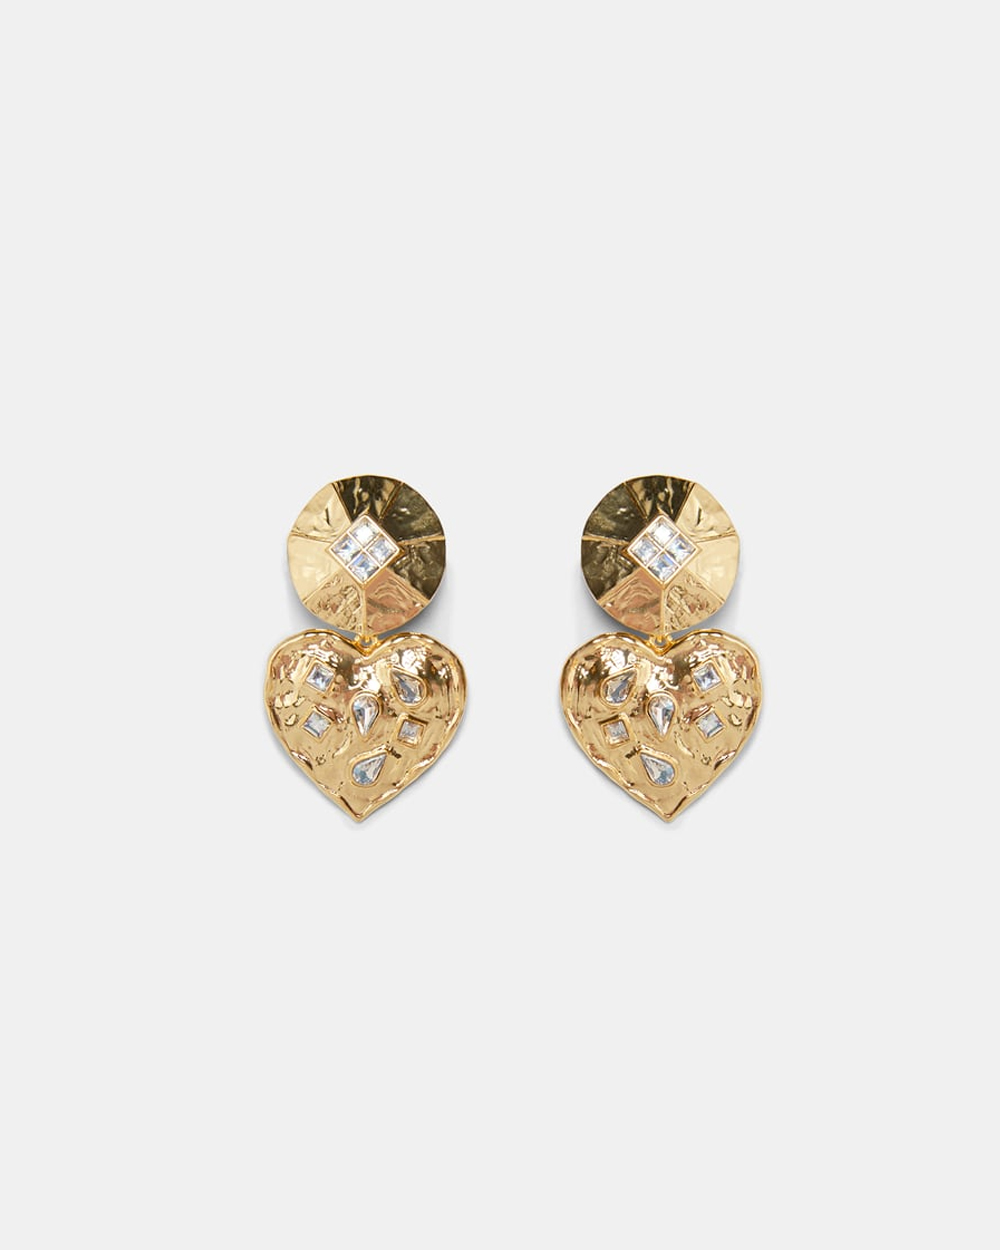 Heart earrings, $30 from Zara